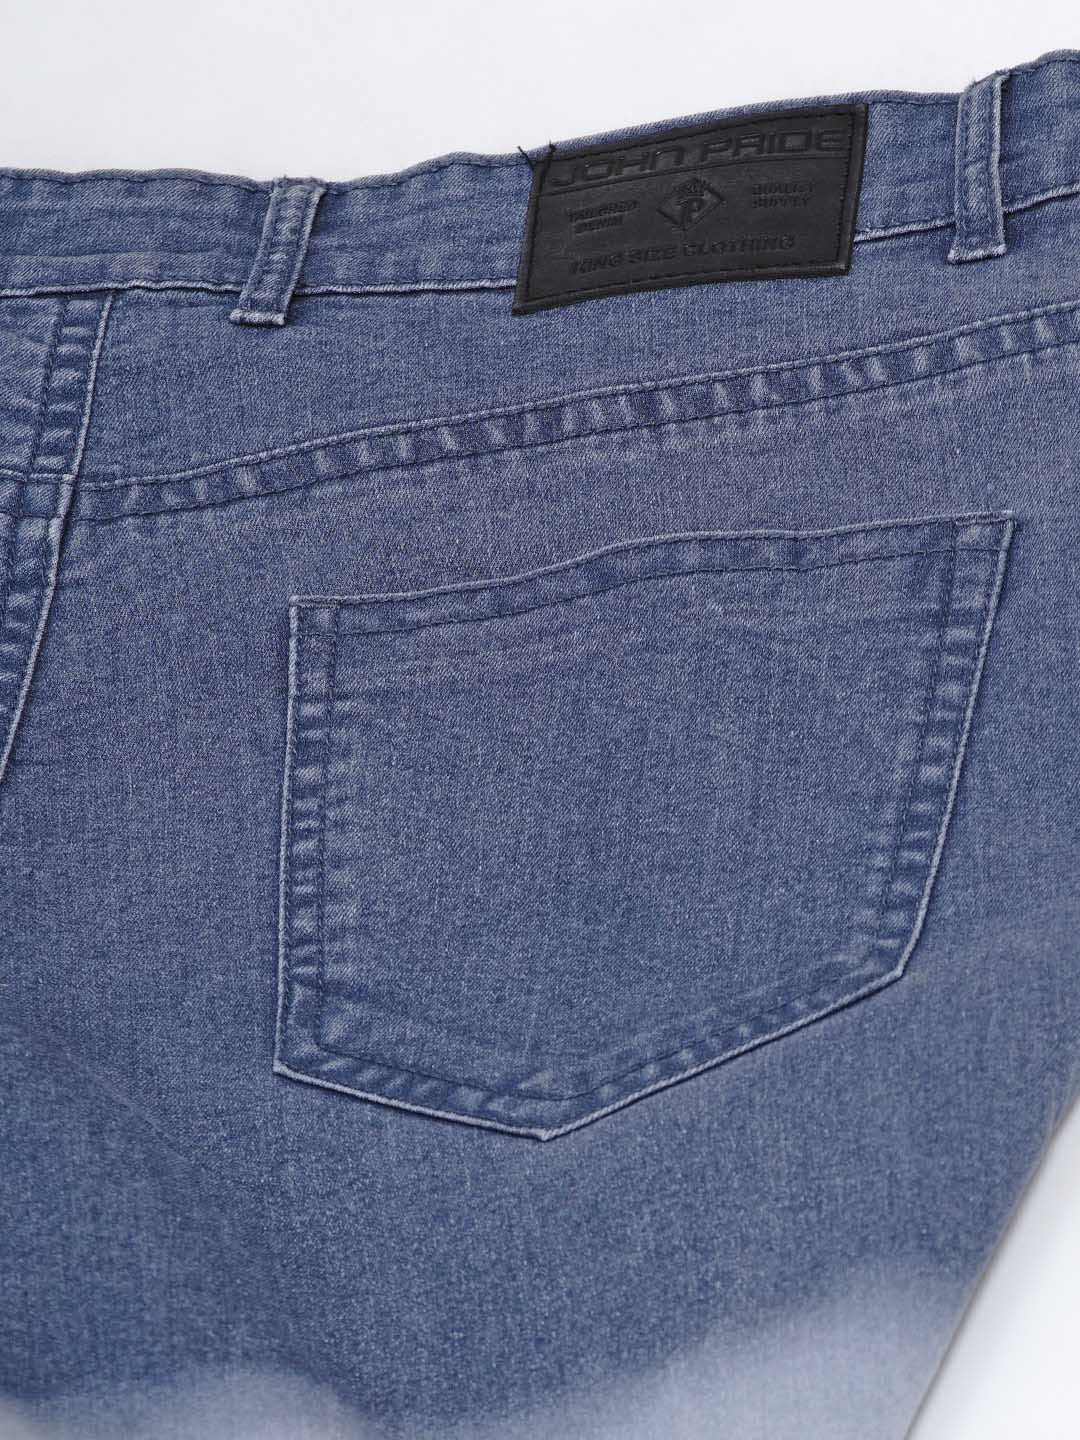 bottomwear/jeans/JPJ6004/jpj6004-5.jpg